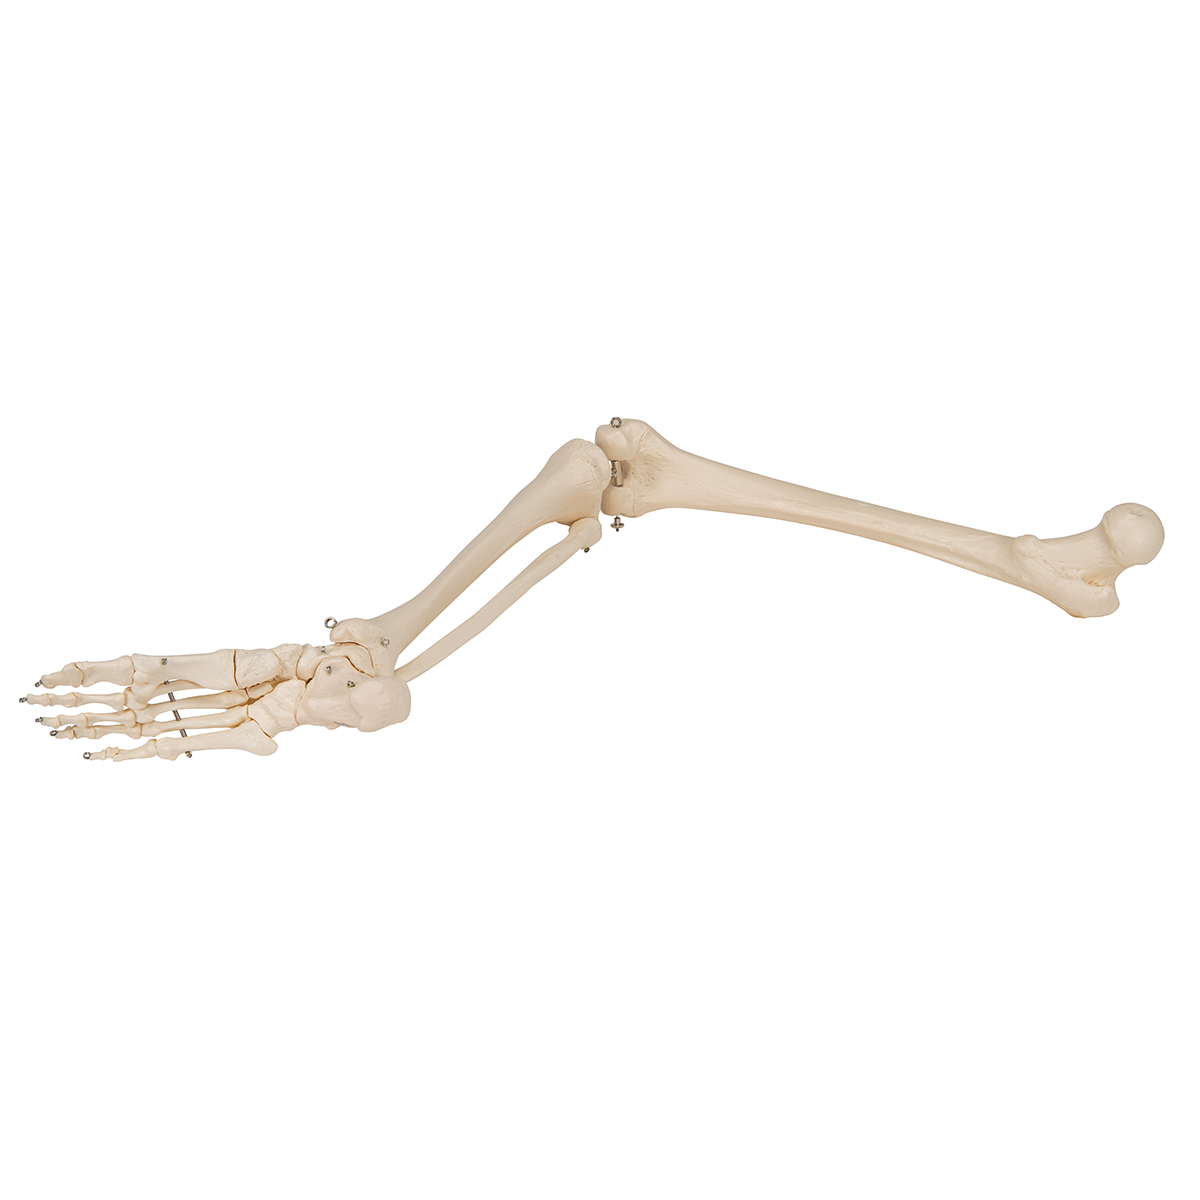 腿骨胳- 3B Smart Anatomy - 1019359 - A35 - 腿和脚骨骼模型- 3B